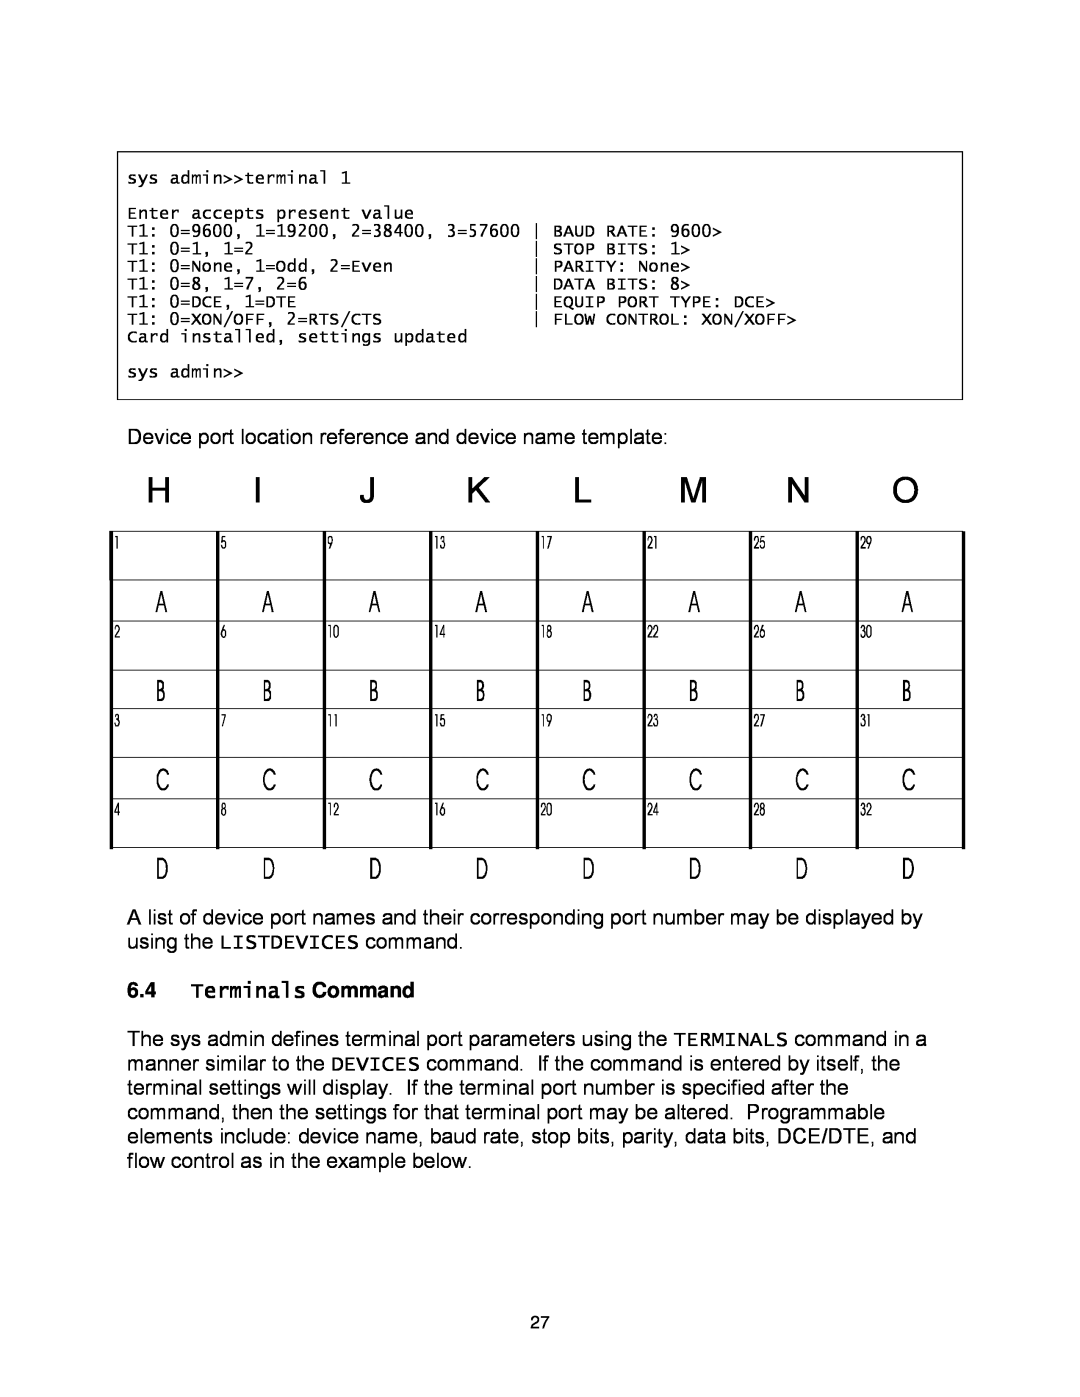 Lightwave Communications 3200 user manual H I J K L M N O, Terminals Command 